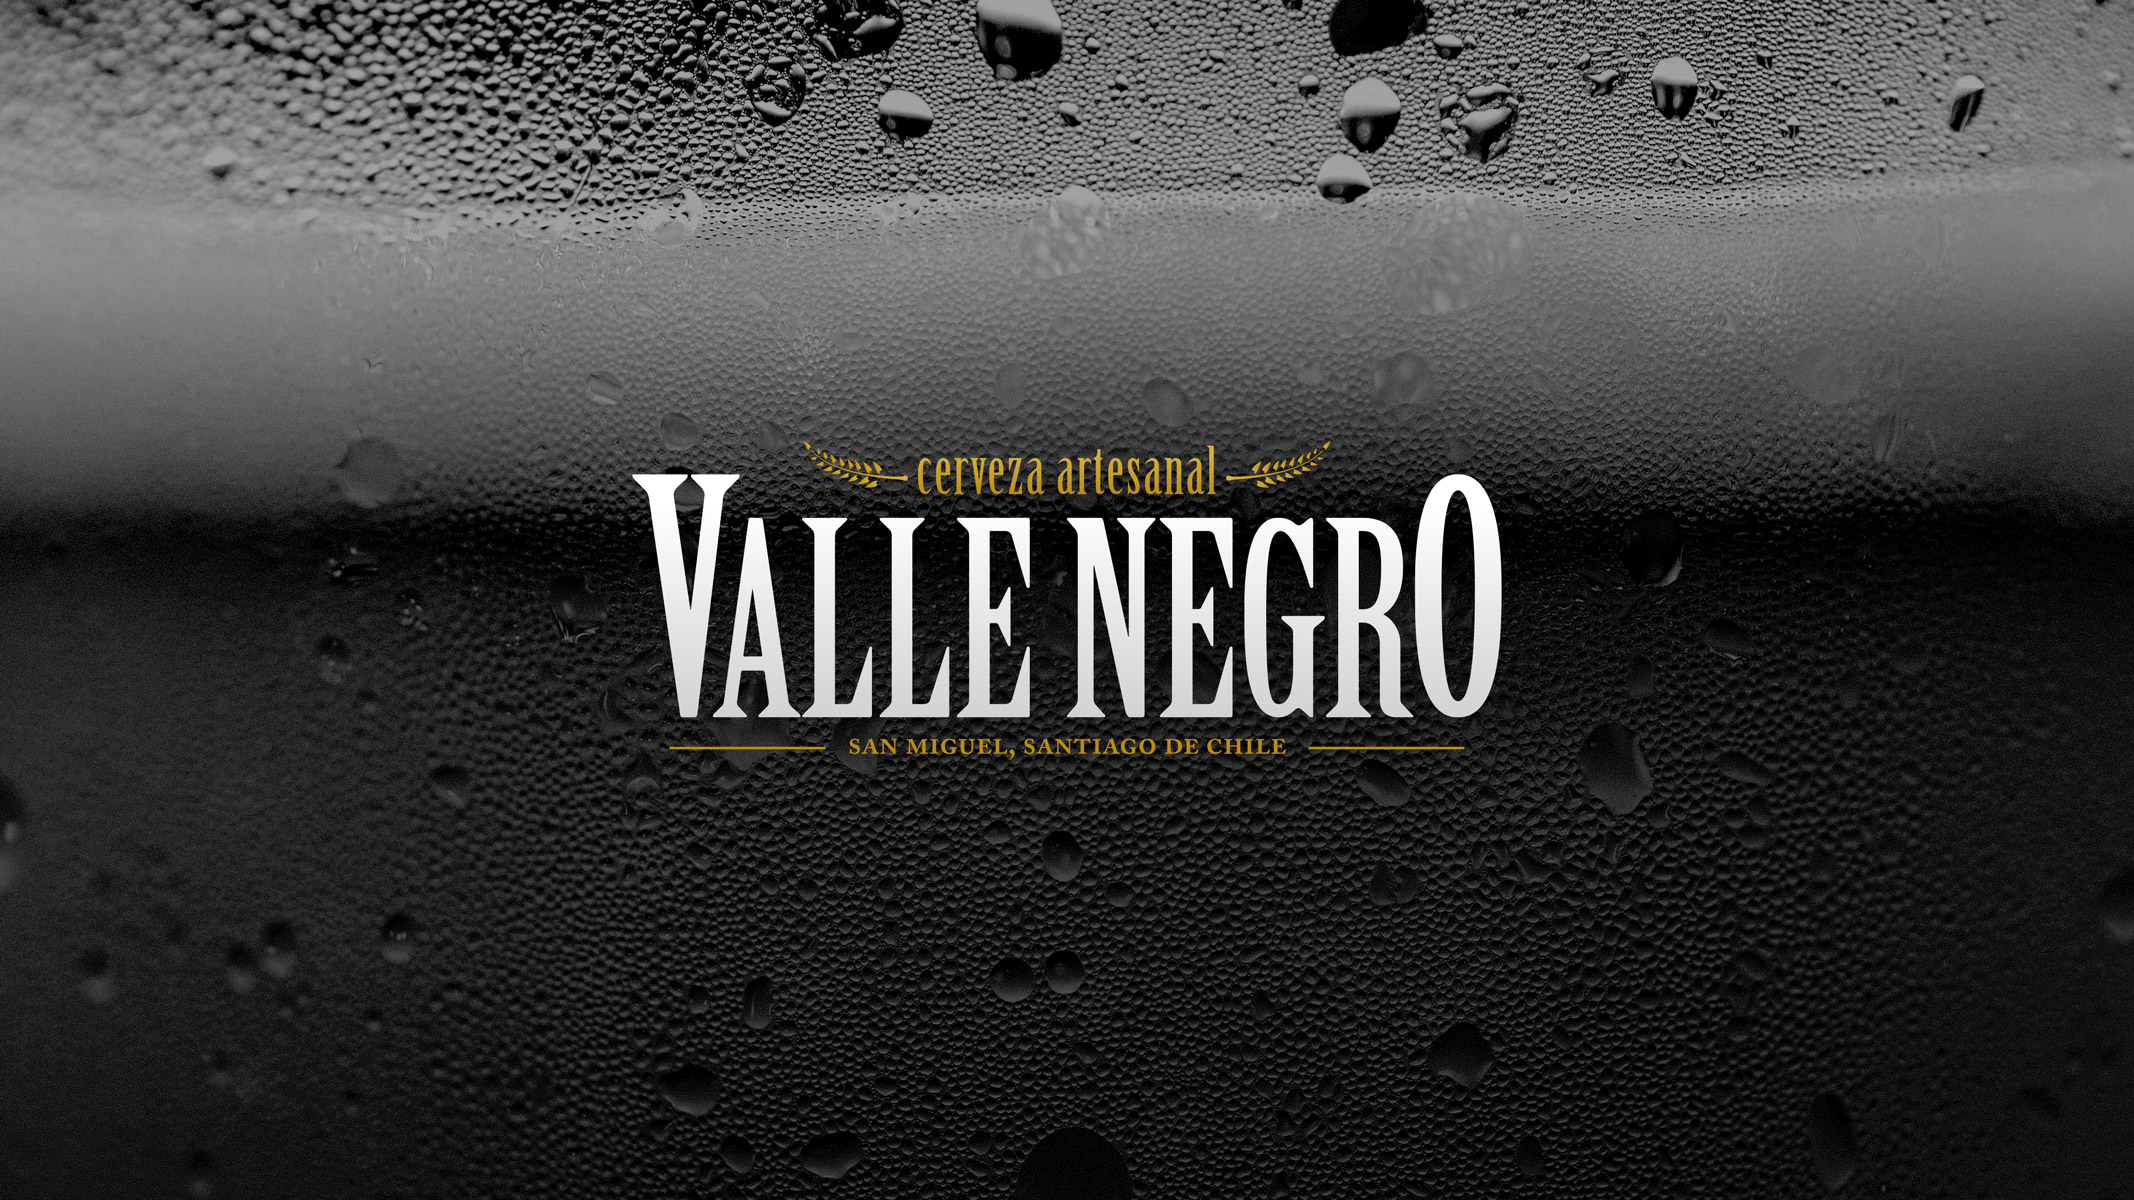 Aparece un fondo de cerveza en Monocromo y el logotipo de Valle Negro Cervecería ©Leandro Fuenzalida